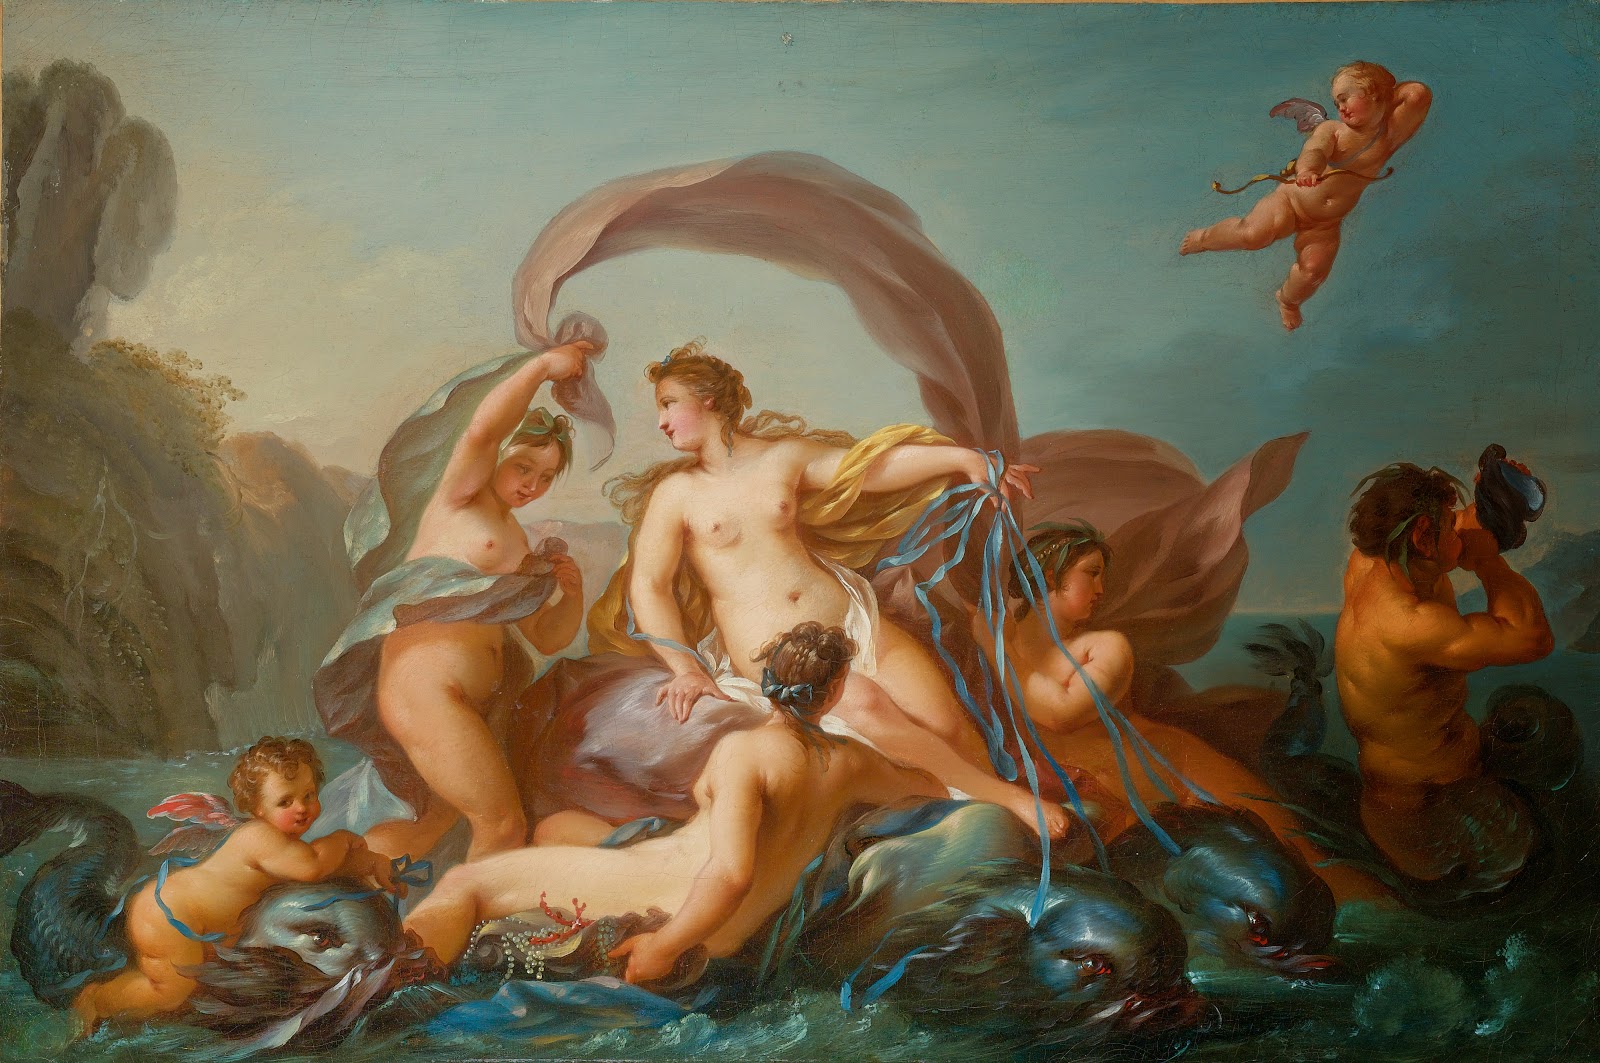 "Σχεδόν ολόκληρη η ελληνική μυθολογία βρίσκεται αποτυπωμένη στον ουρανό" Jean-Baptiste_Marie_Pierre_(attr)_The_Birth_of_Venus